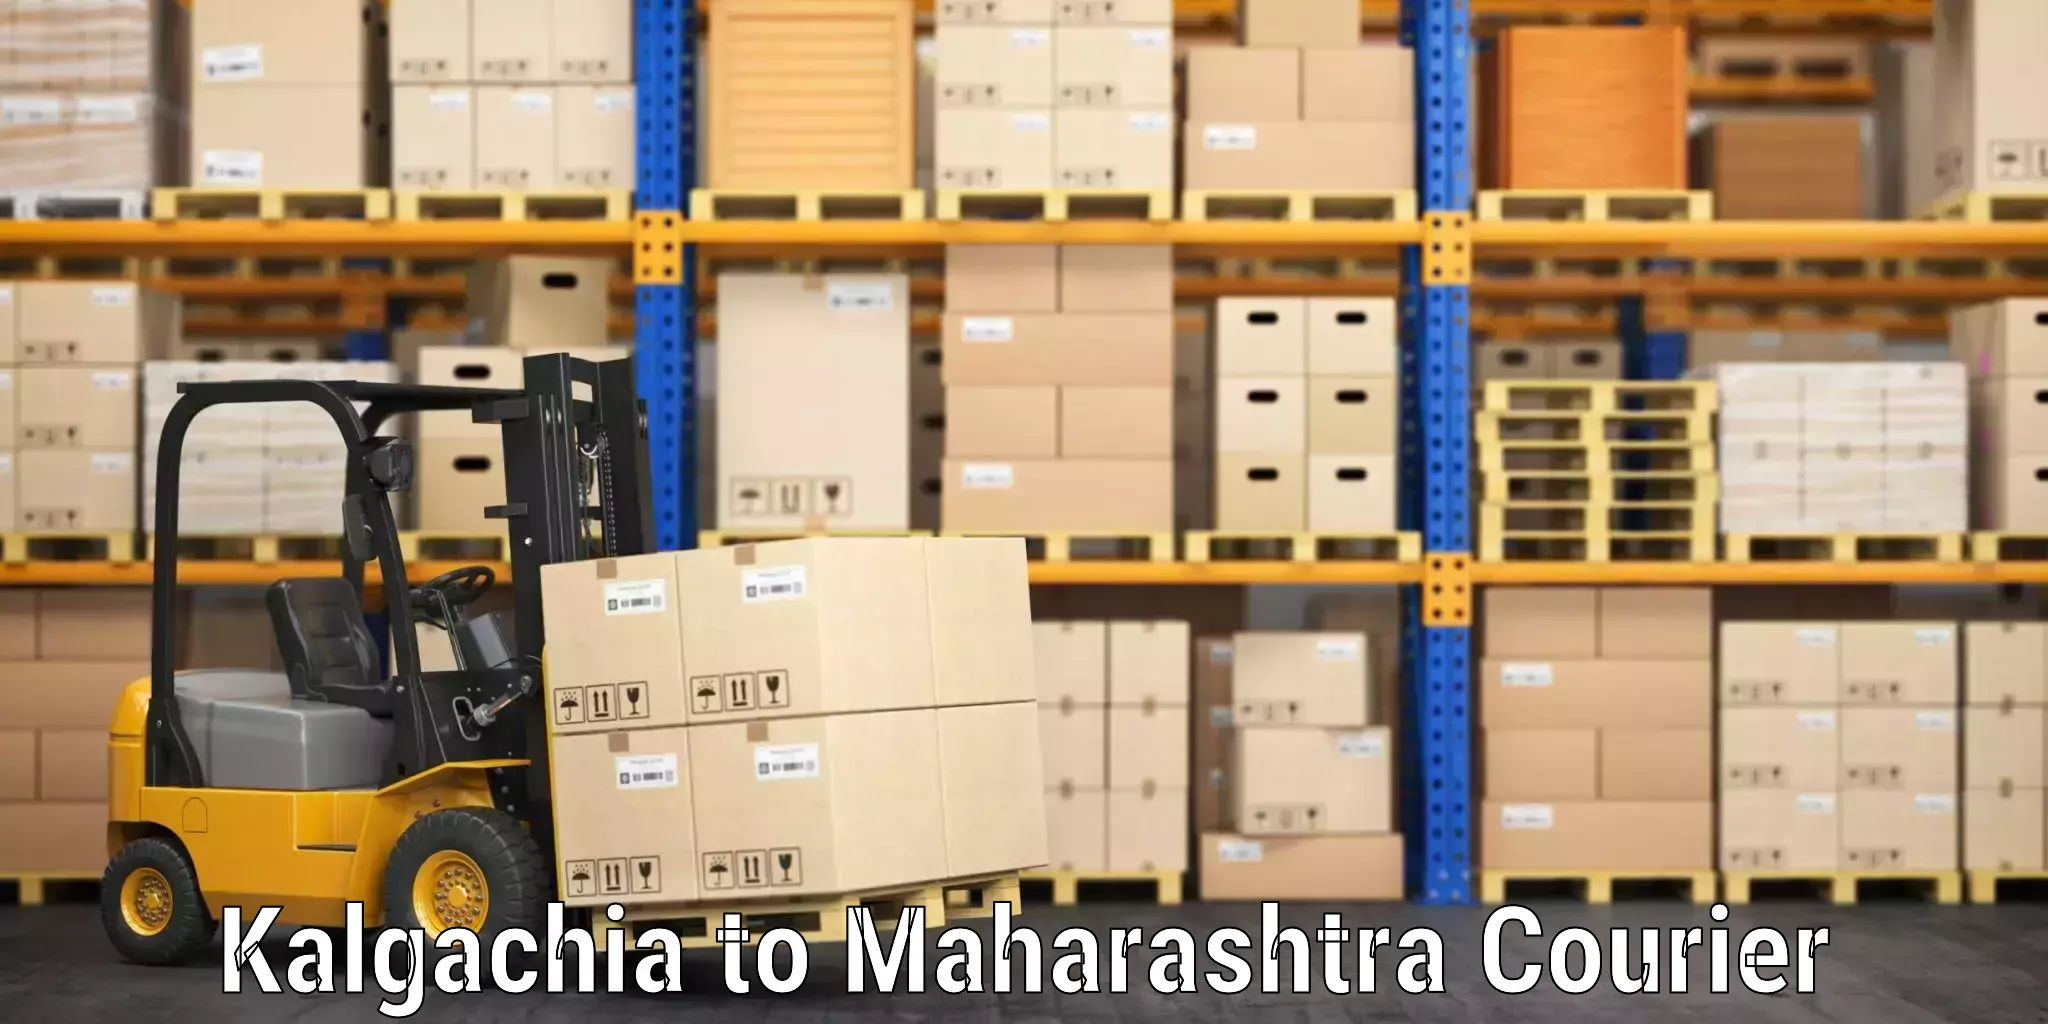 Luggage shipping planner Kalgachia to Maharashtra